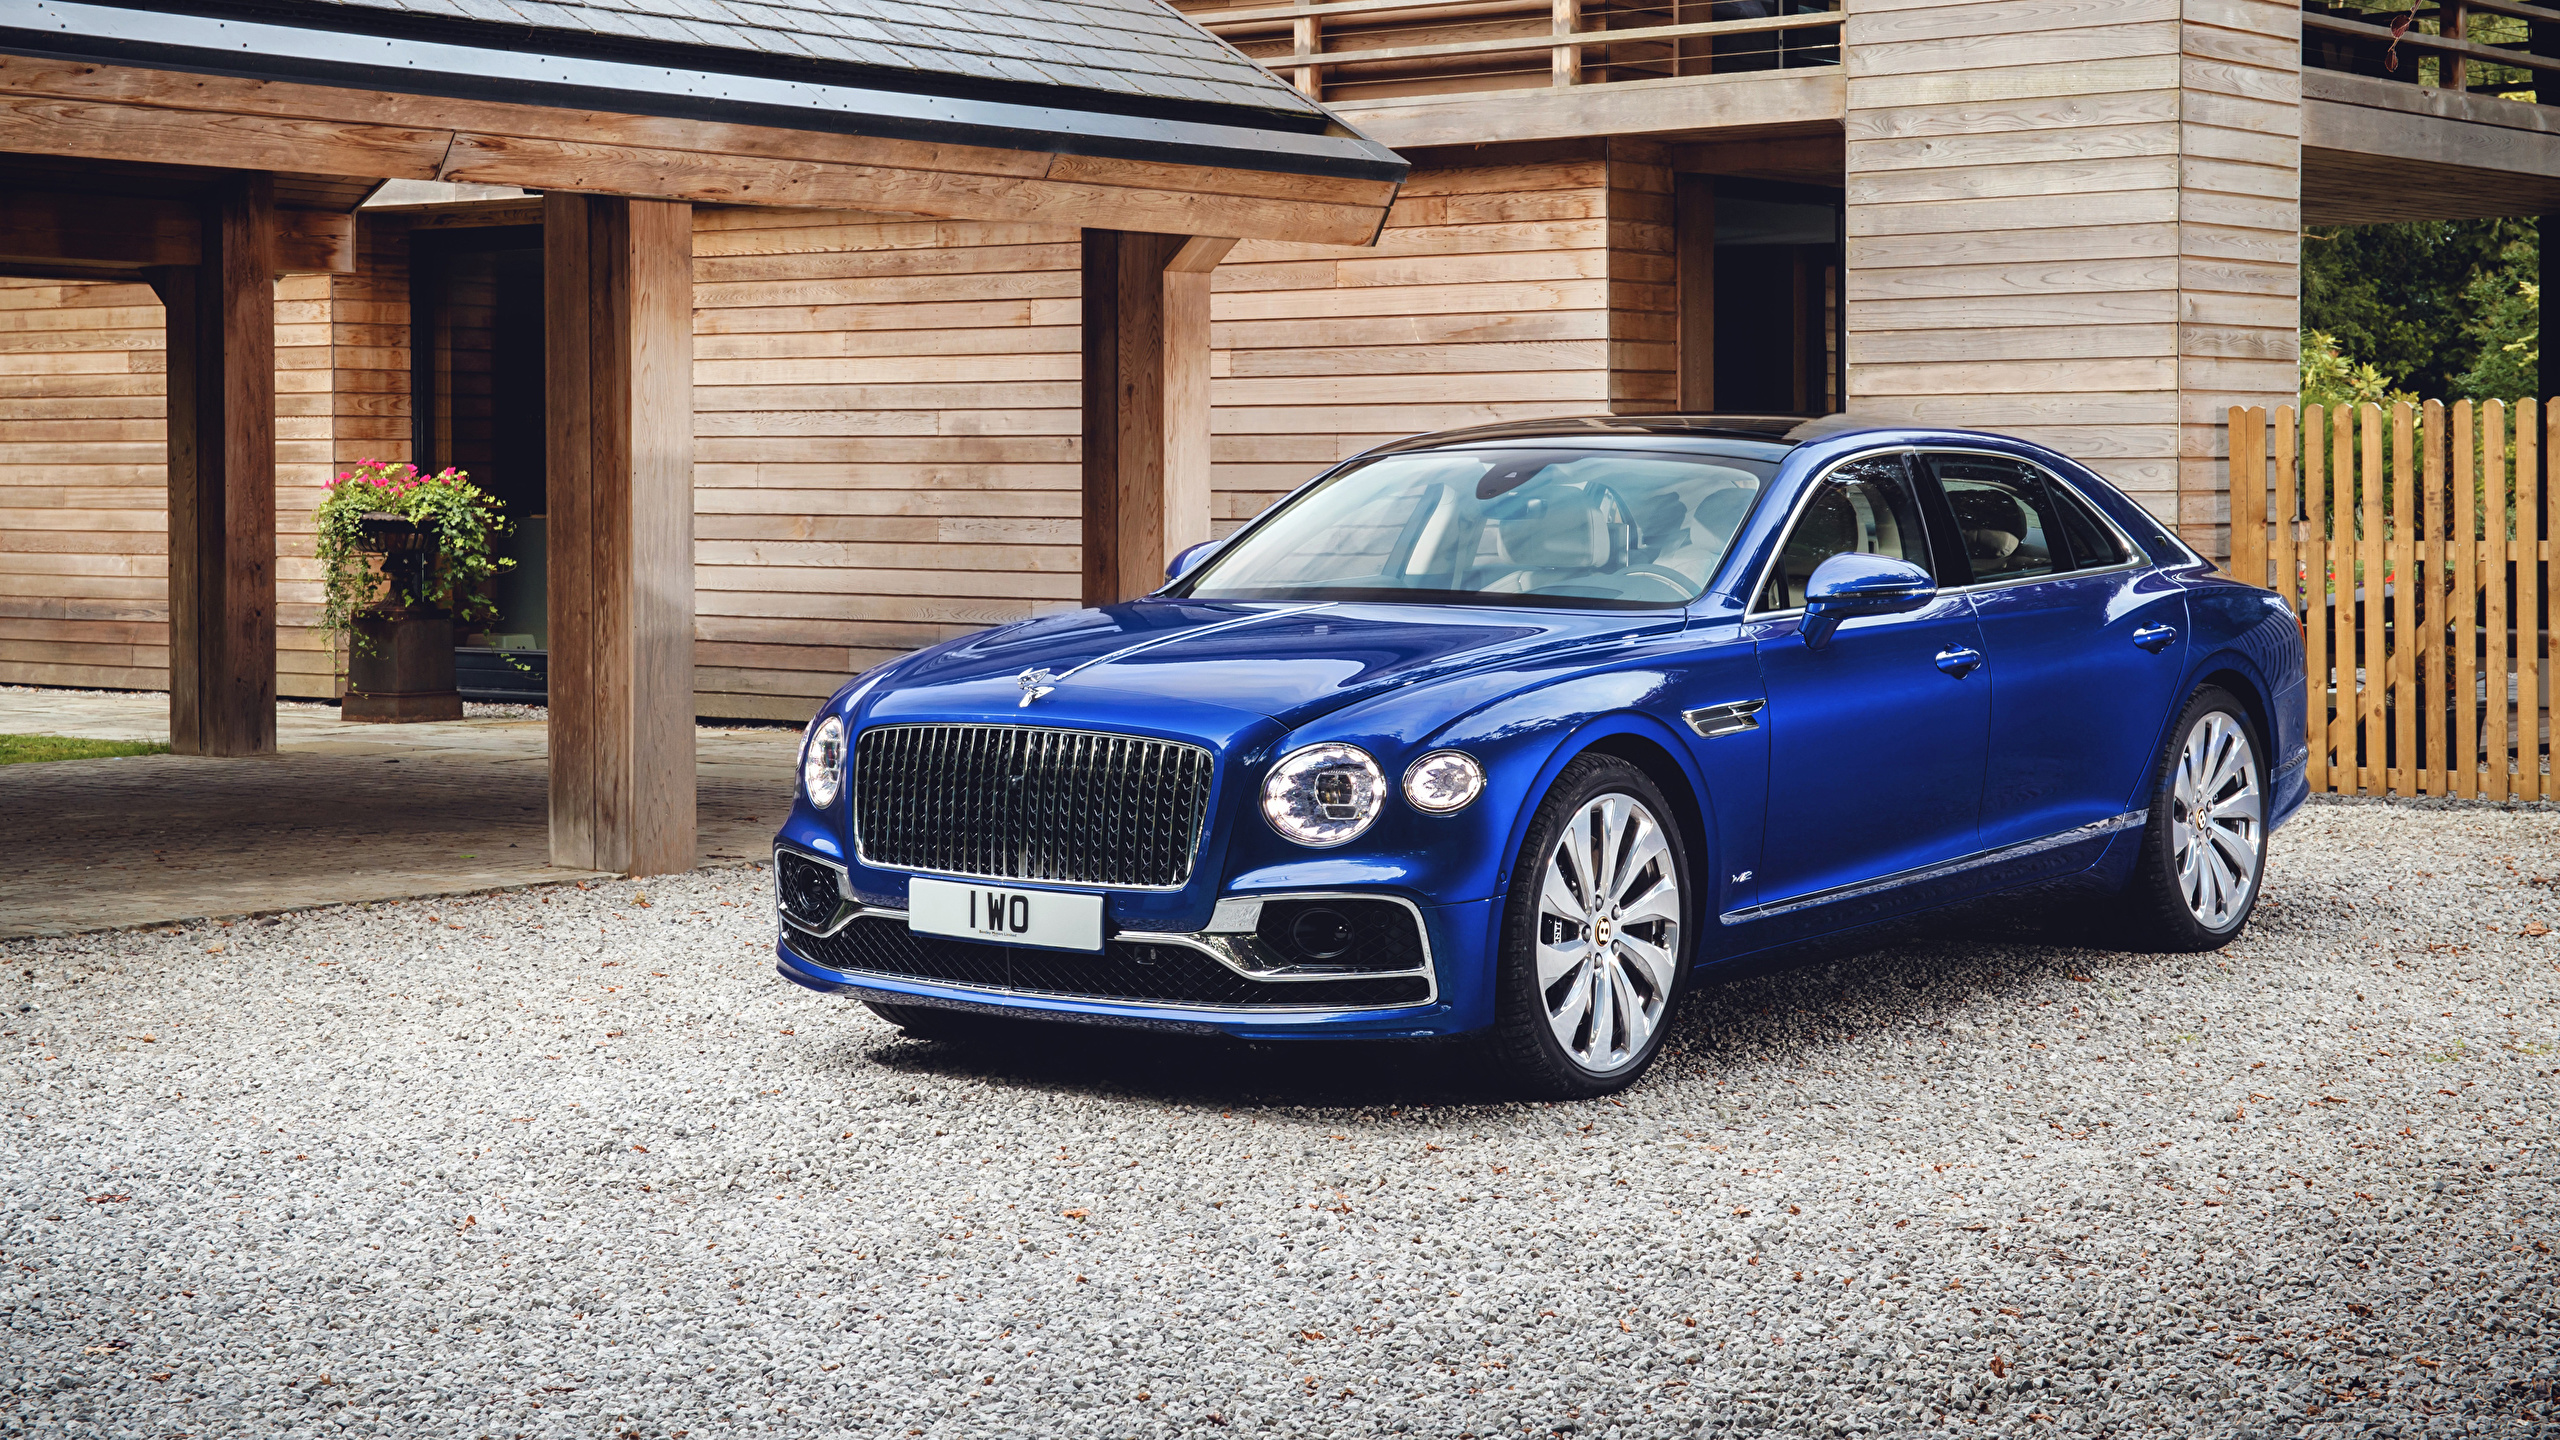 Обои для рабочего стола Бентли 2019-20 Flying Spur First Edition Worldwide Синий машина Металлик 2560x1440 Bentley синяя синие синих авто машины Автомобили автомобиль